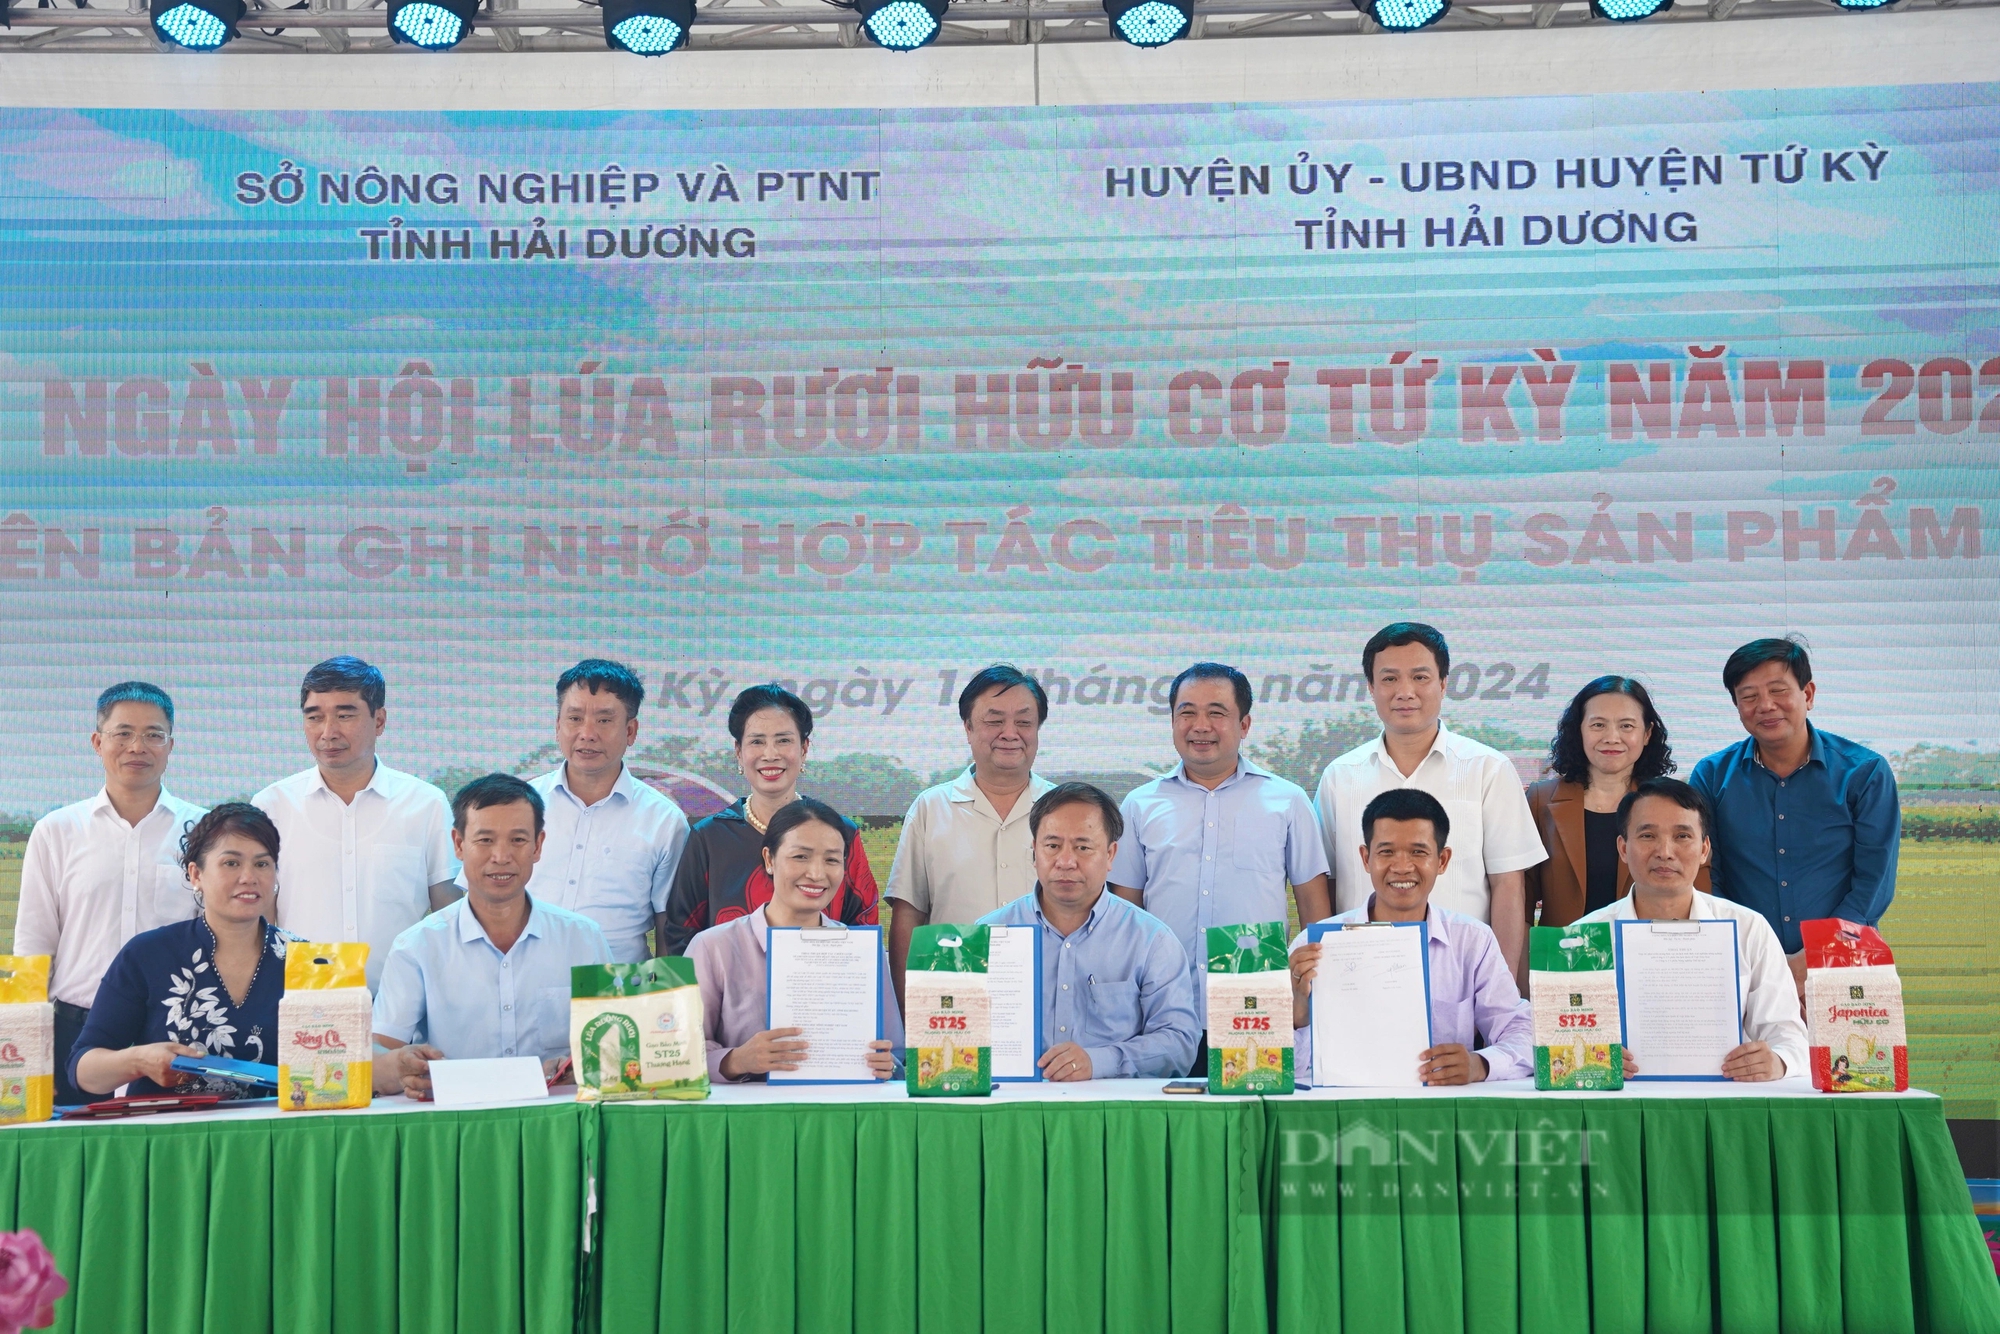 Một huyện của tỉnh Hải Dương, tổ chức ngày hội cho cây lúa, con rươi, Bộ trưởng Bộ NNPTNT đến tận nơi xem- Ảnh 6.